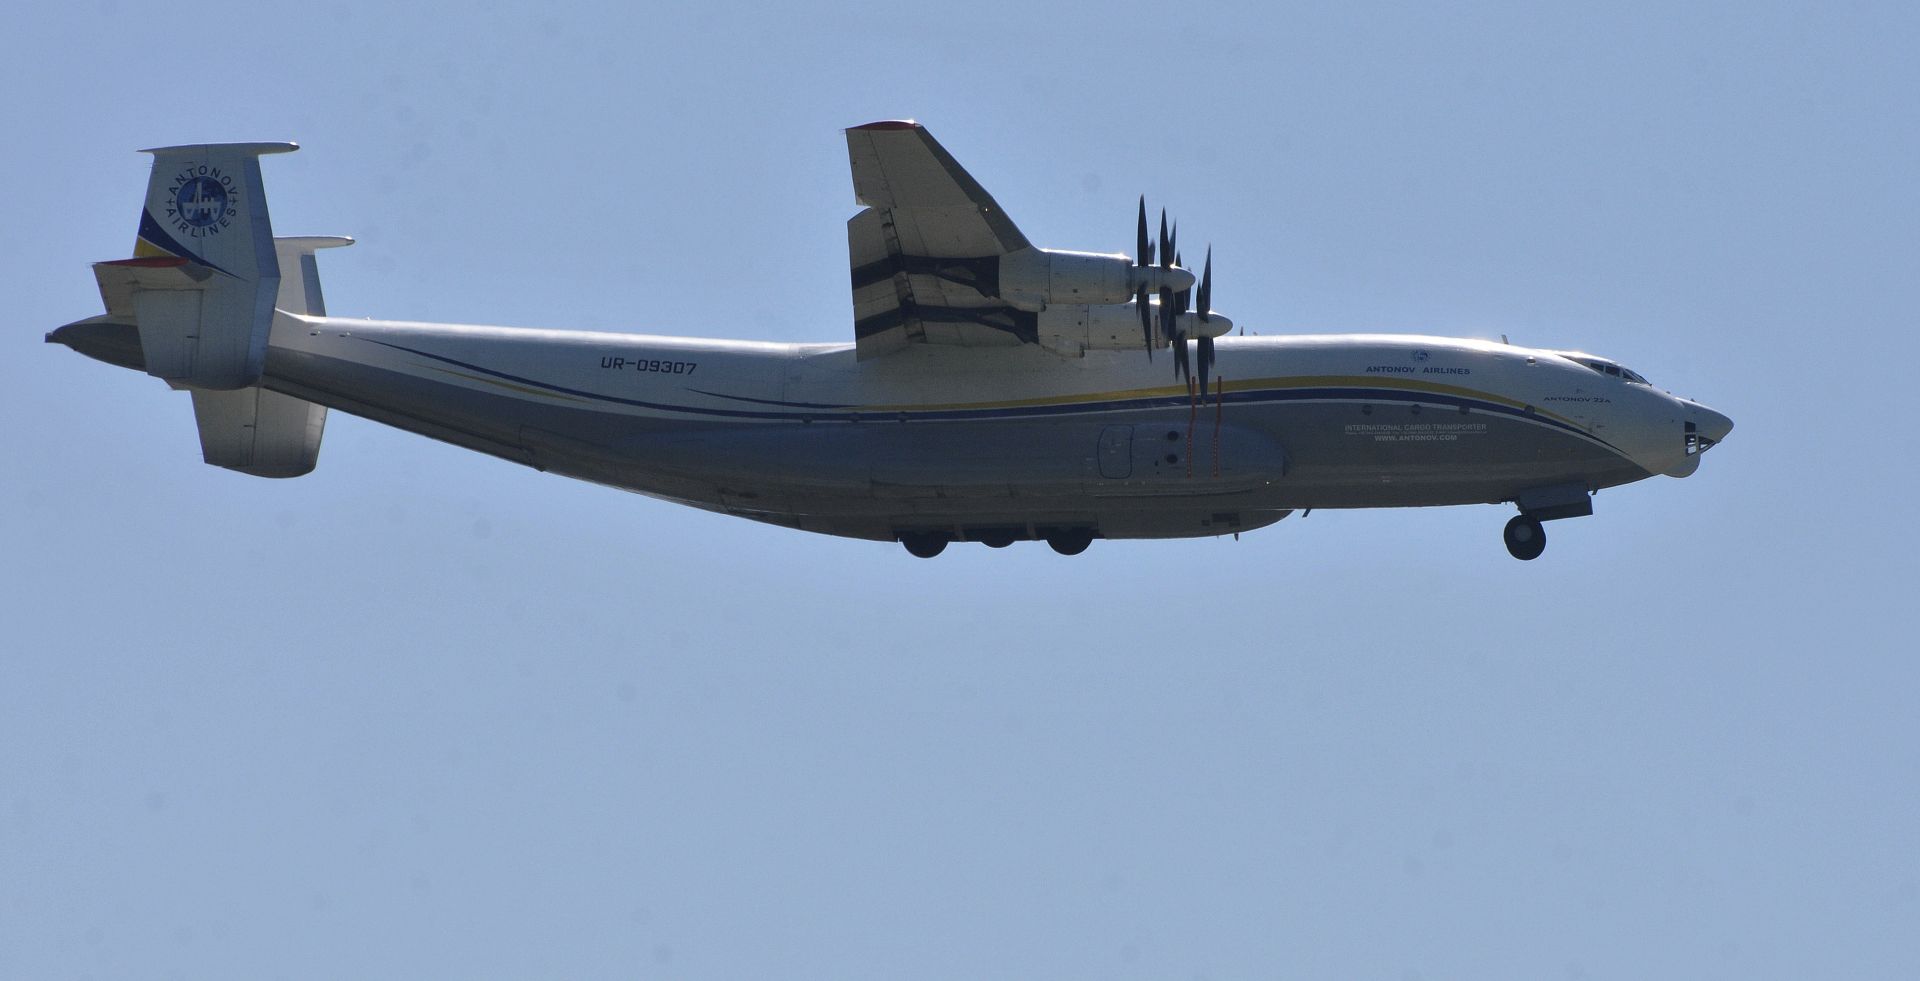  Най-големият витлов аероплан в света Антонов Ан-22 /Антей/ излетя от летище Бургас 